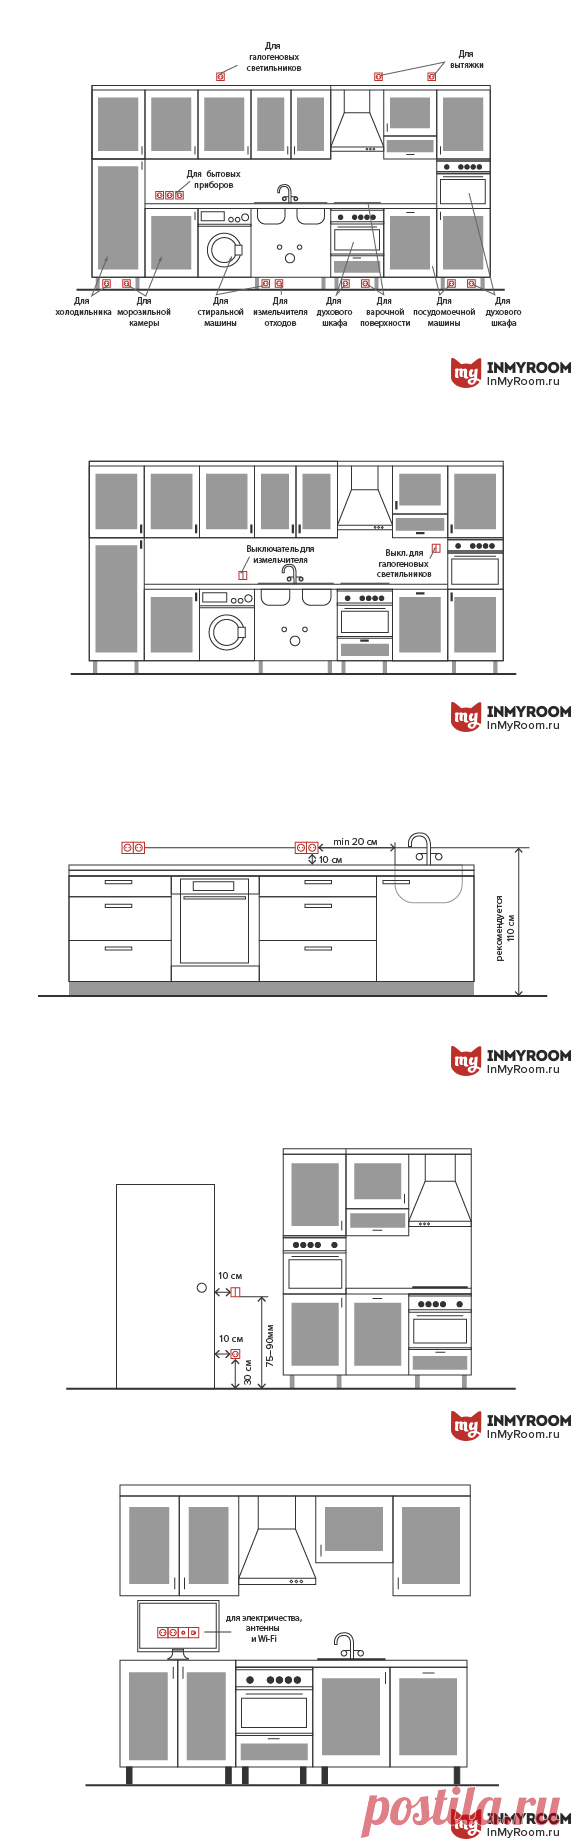 Как правильно разместить розетки и выключатели на кухне | Свежие идеи дизайна интерьеров, декора, архитектуры на InMyRoom.ru